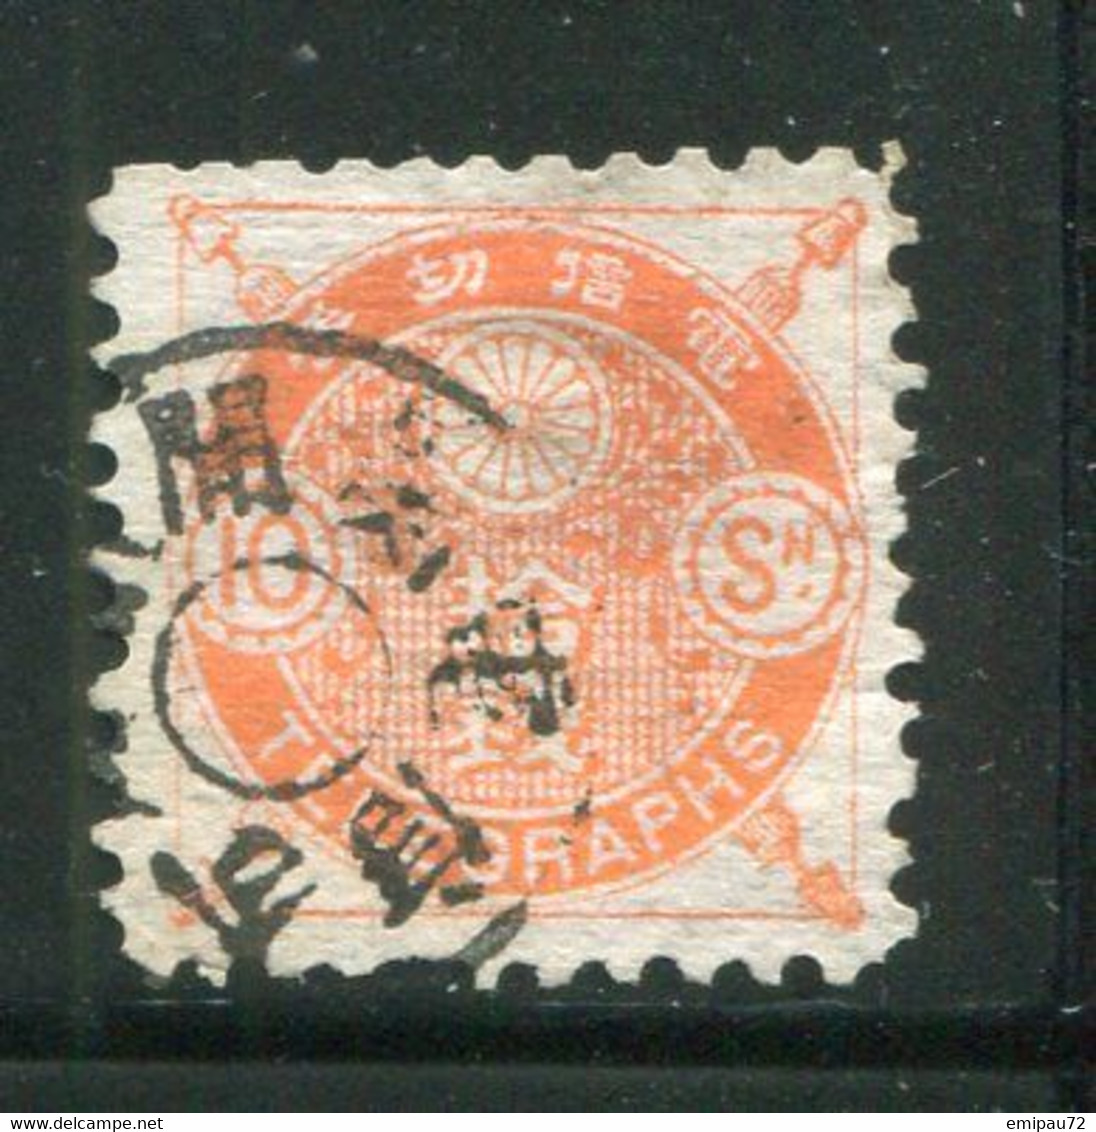 JAPON- Télégraphe Y&T N°6- Oblitéré - Telegraafzegels